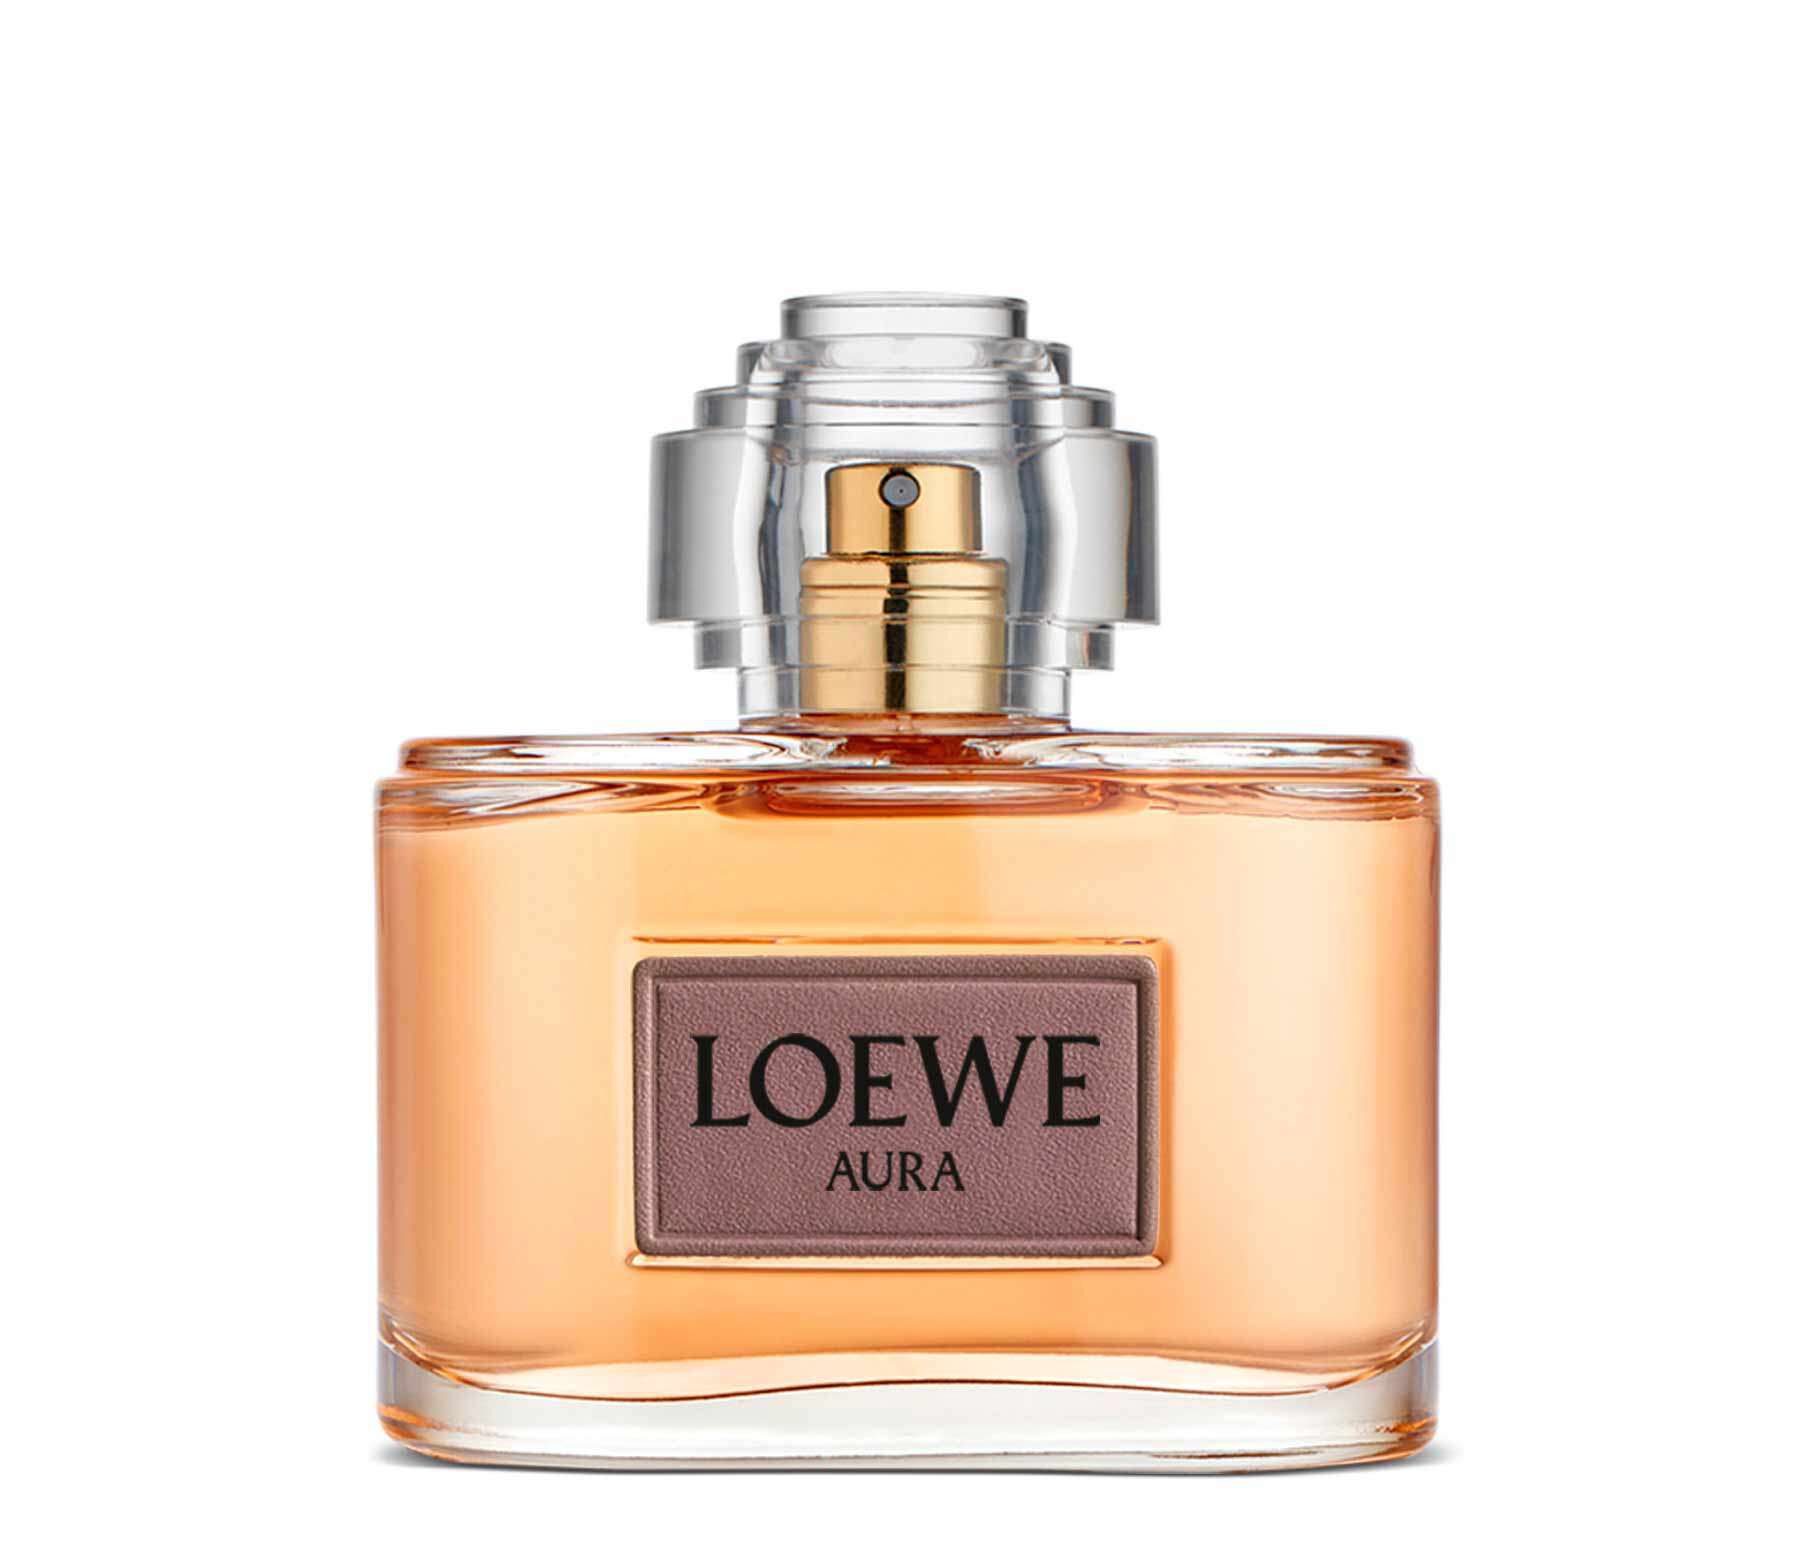 Buy online LOEWE Aura Floral Classic 